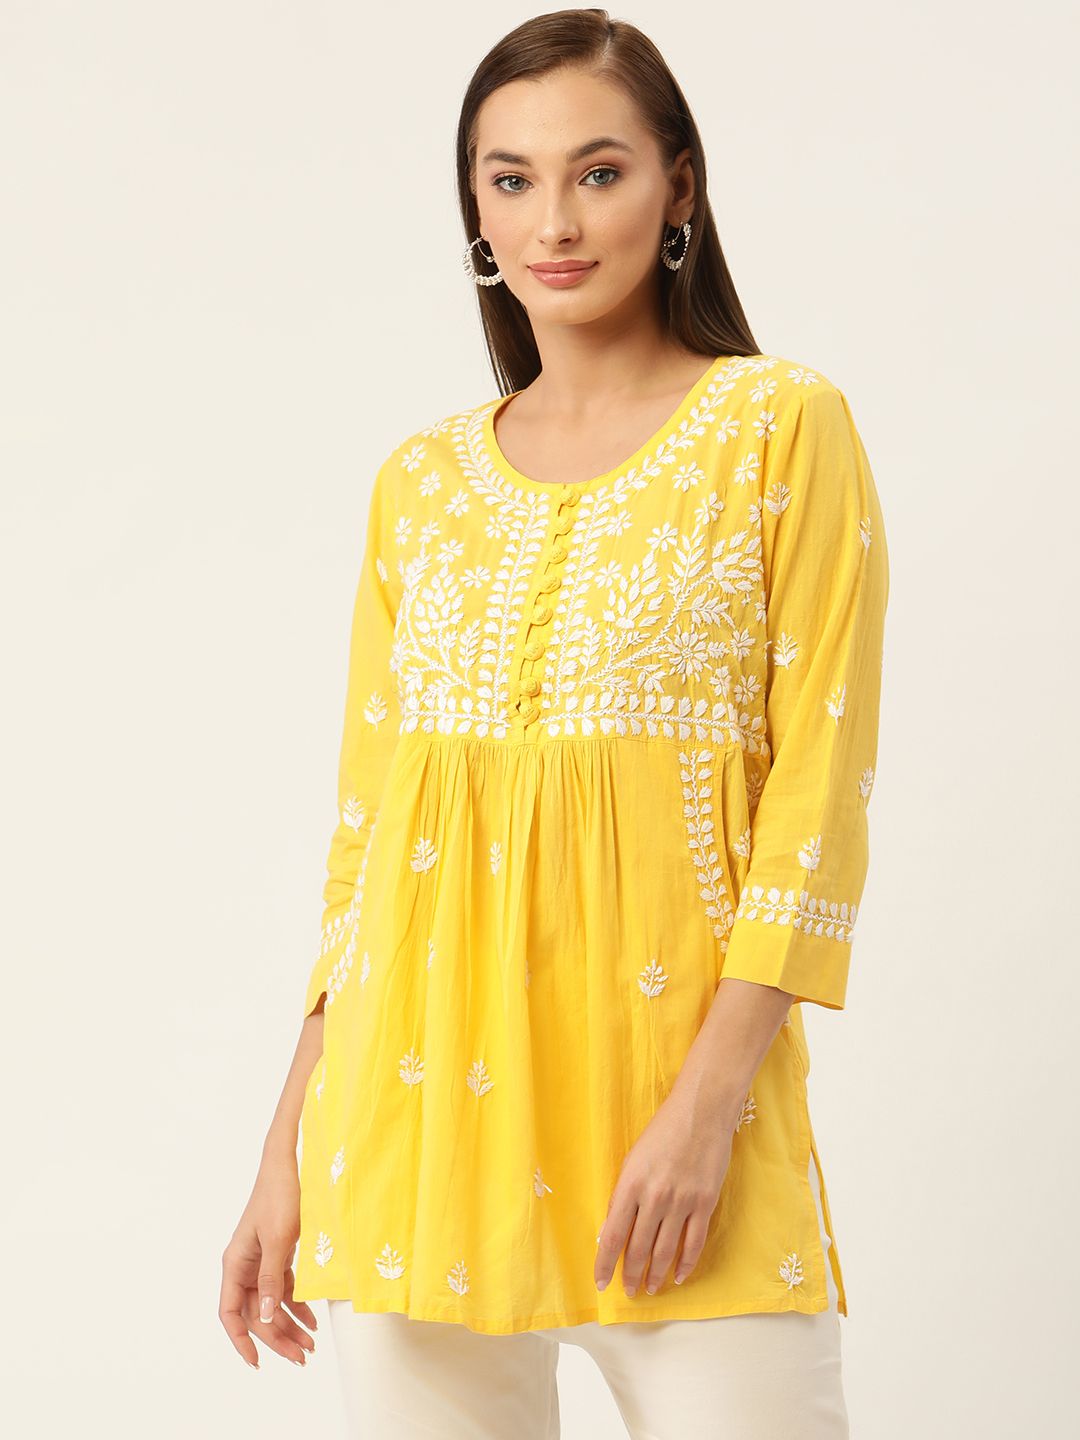 HOUSE OF KARI Yellow & White Chikankari Embroidered Tunic Price in India